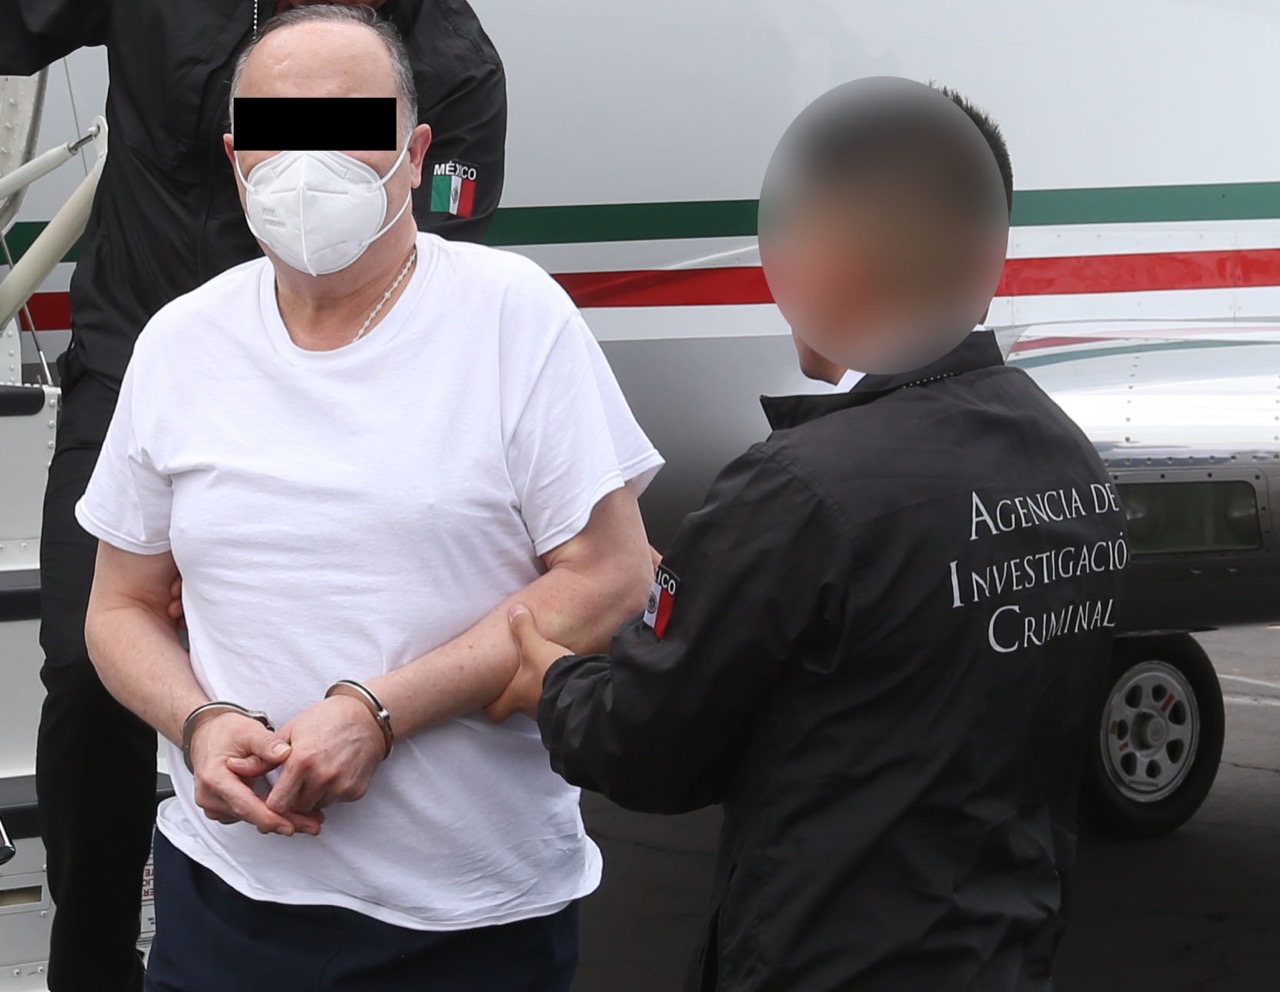 Fue ingresado en un penal de Chihuahua tras aterrizar primero en la capital del país (Foto: Fiscalía Chihuahua)